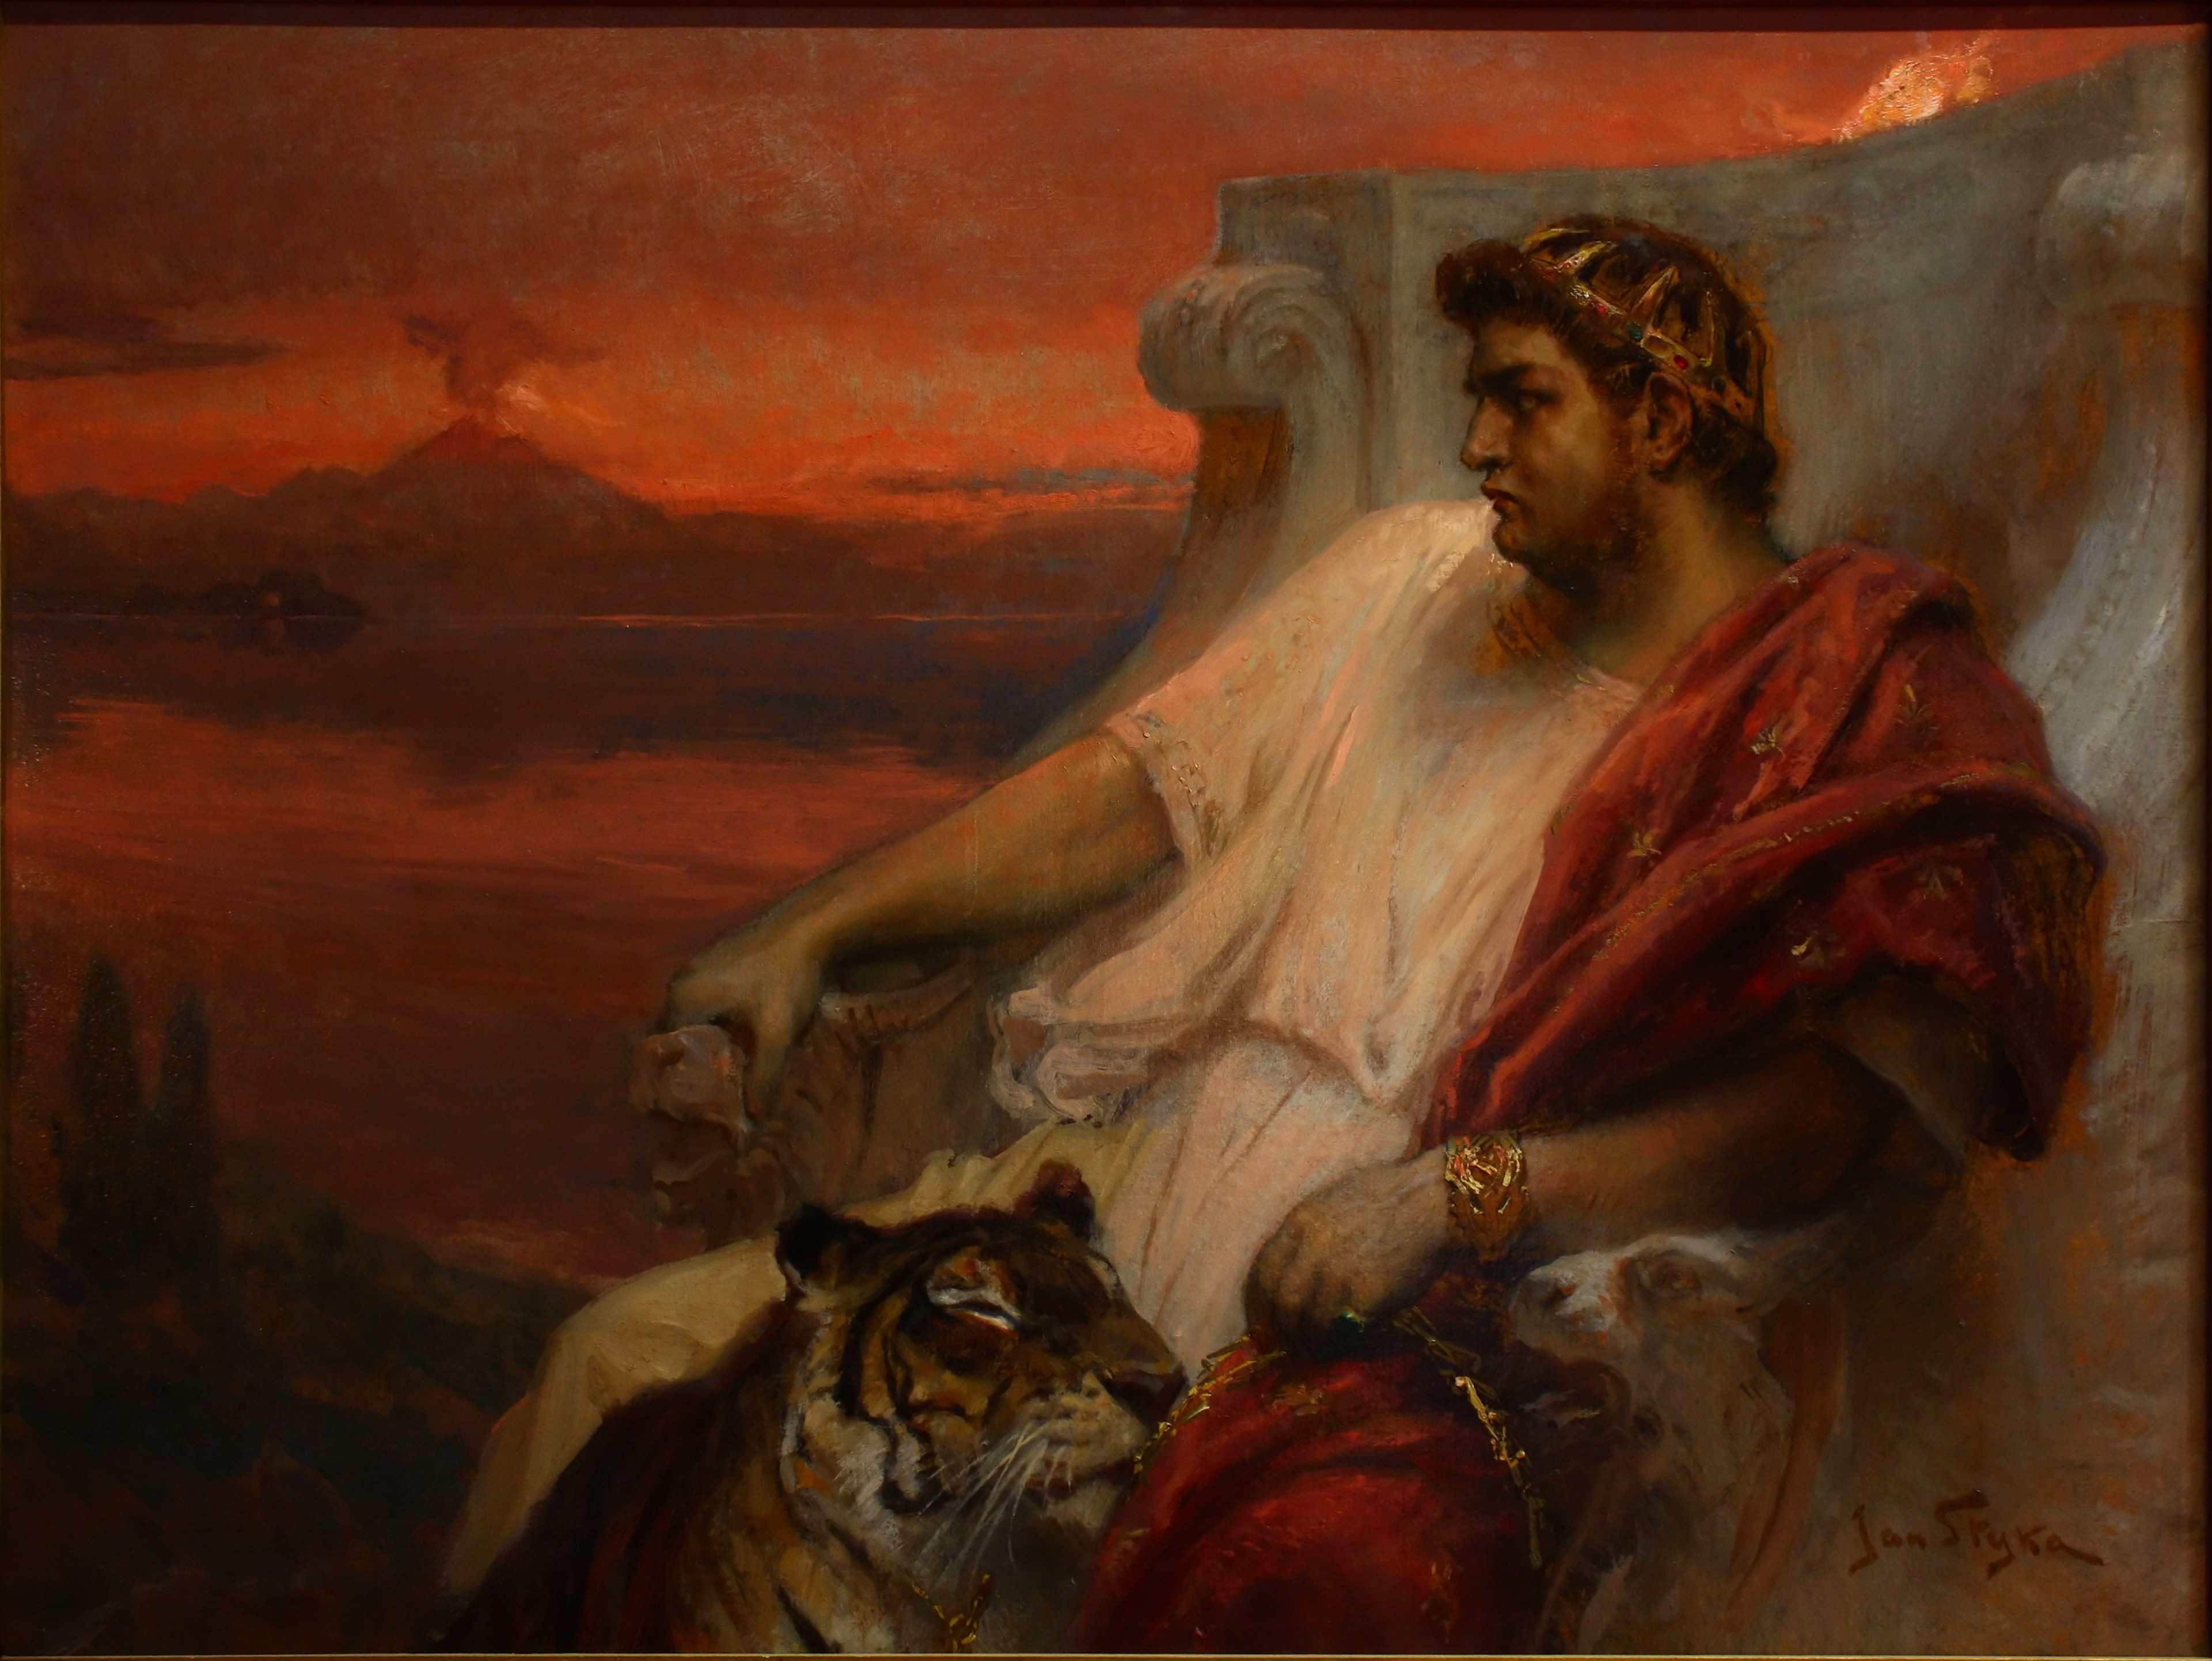 Nero császár Jan Styka festményén (forrás: Wikipedia)